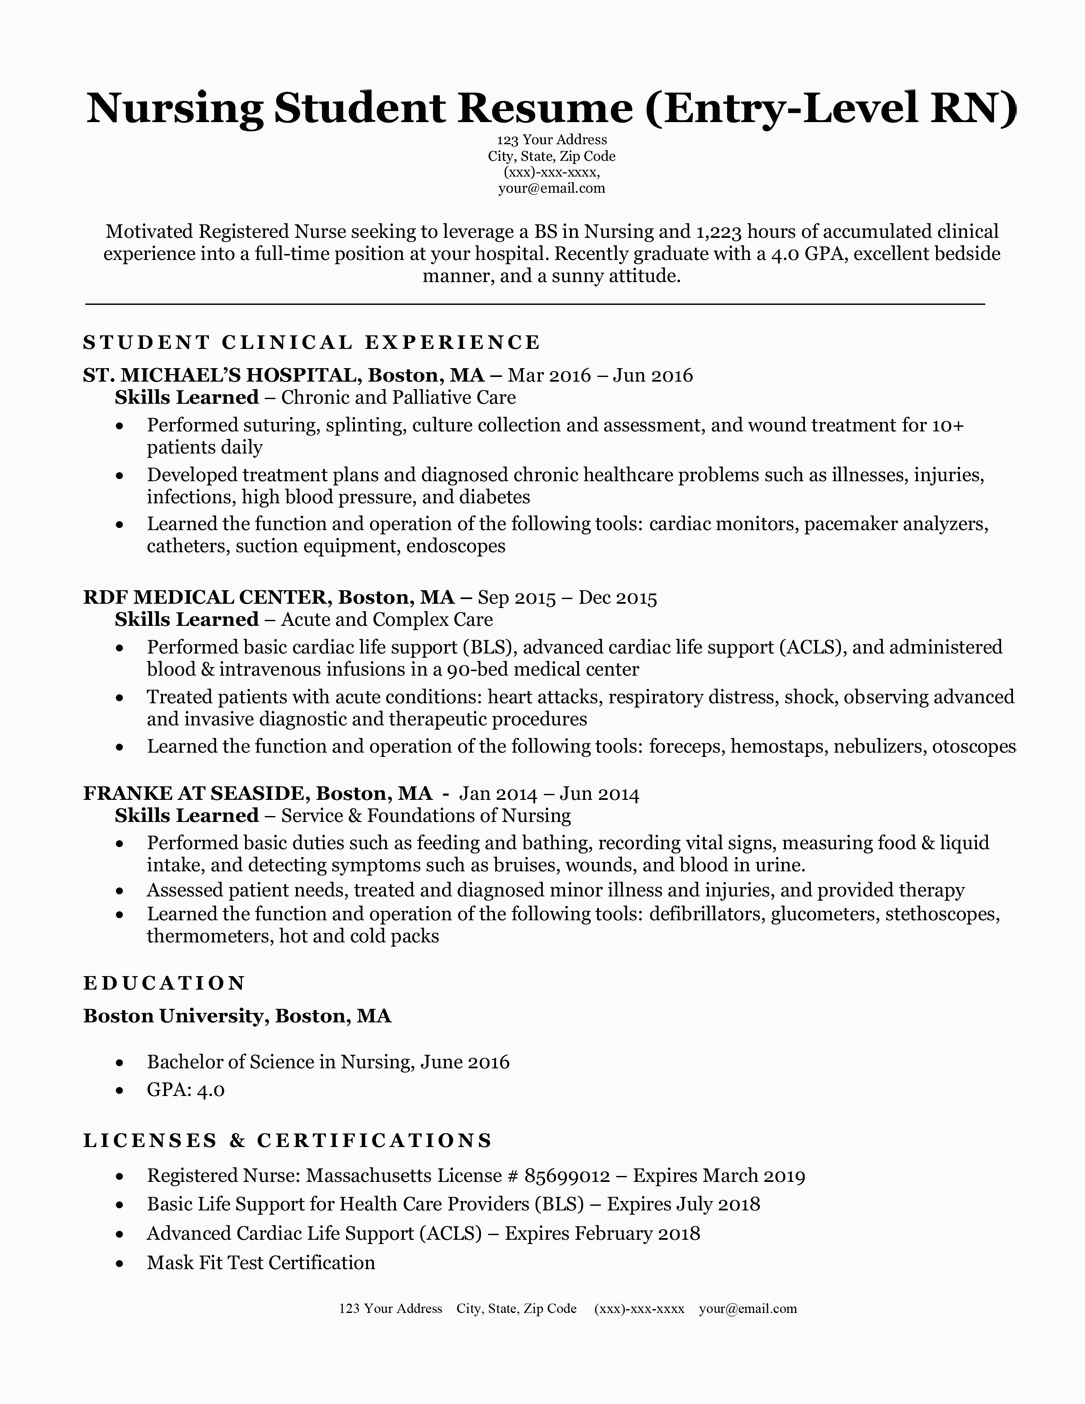 Sample Resume for A Graduate Nurse Graduate Nurse Resume Template